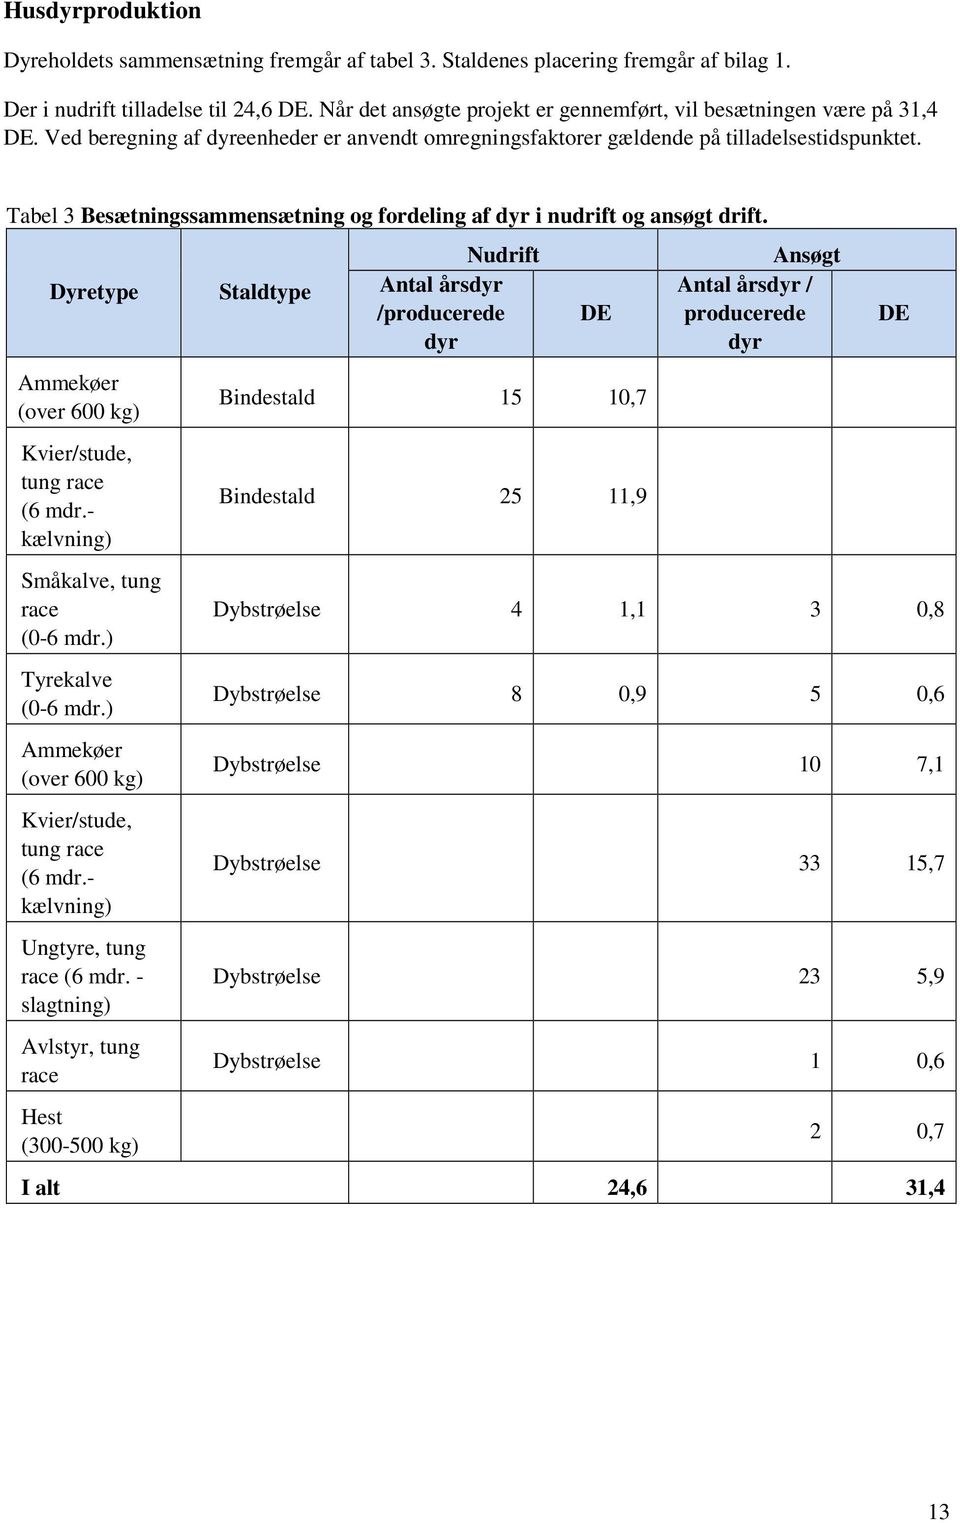 Tabel 3 Besætningssammensætning og fordeling af dyr i nudrift og ansøgt drift. Dyretype Ammekøer (over 600 kg) Kvier/stude, tung race (6 mdr.- kælvning) Småkalve, tung race (0-6 mdr.